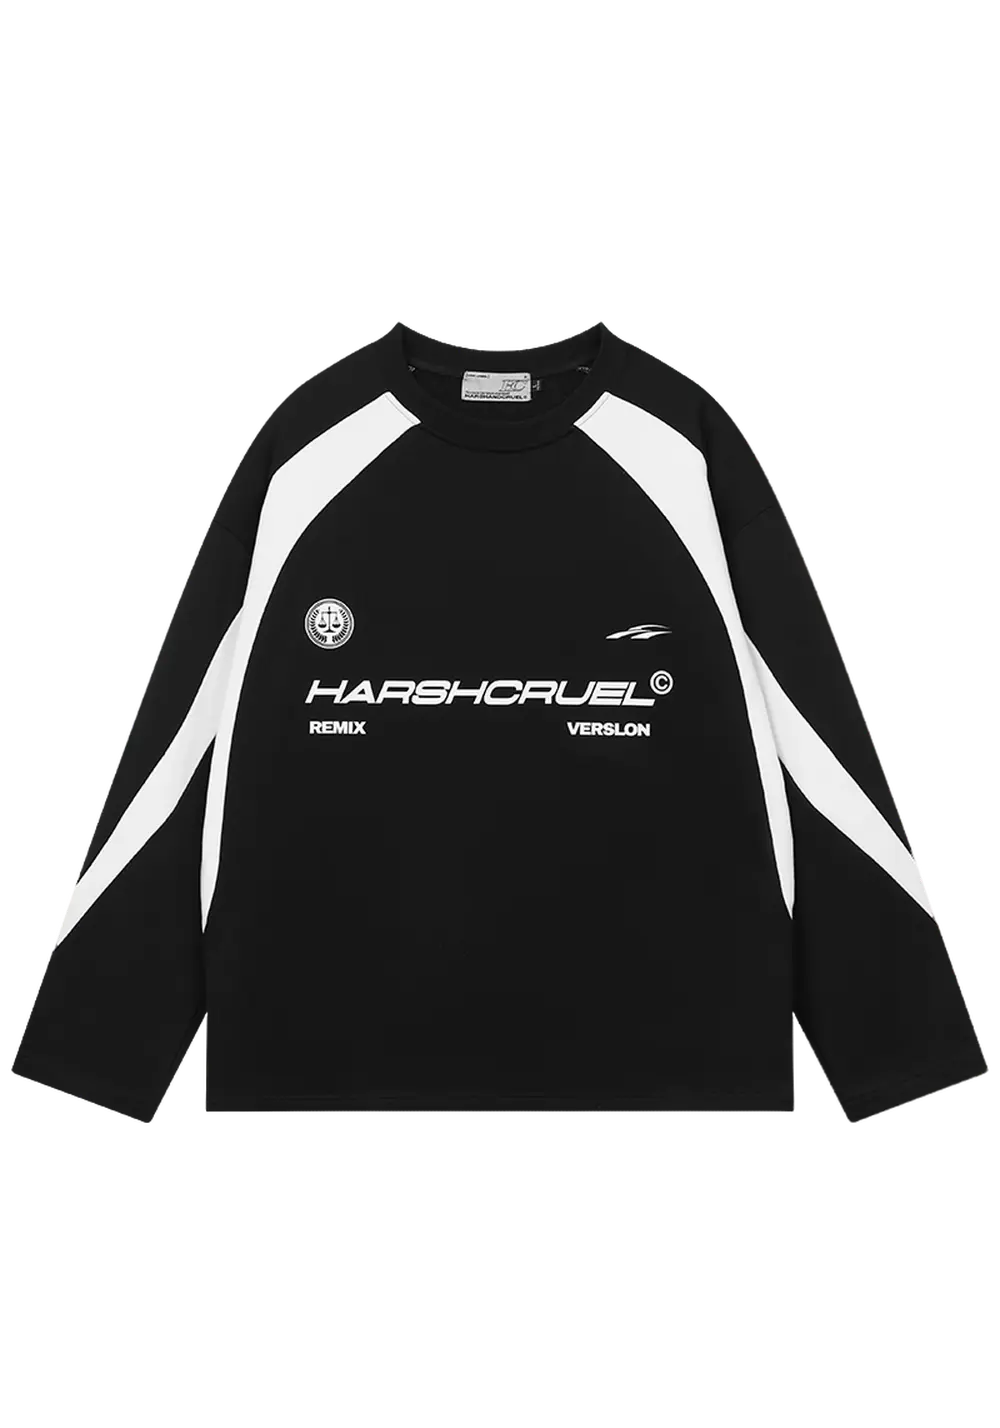 Retro Sport Patchwork Shirt - PSYLOS 1, Retro Sport Patchwork Shirt, Shirt, HARSH AND CRUEL, PSYLOS 1